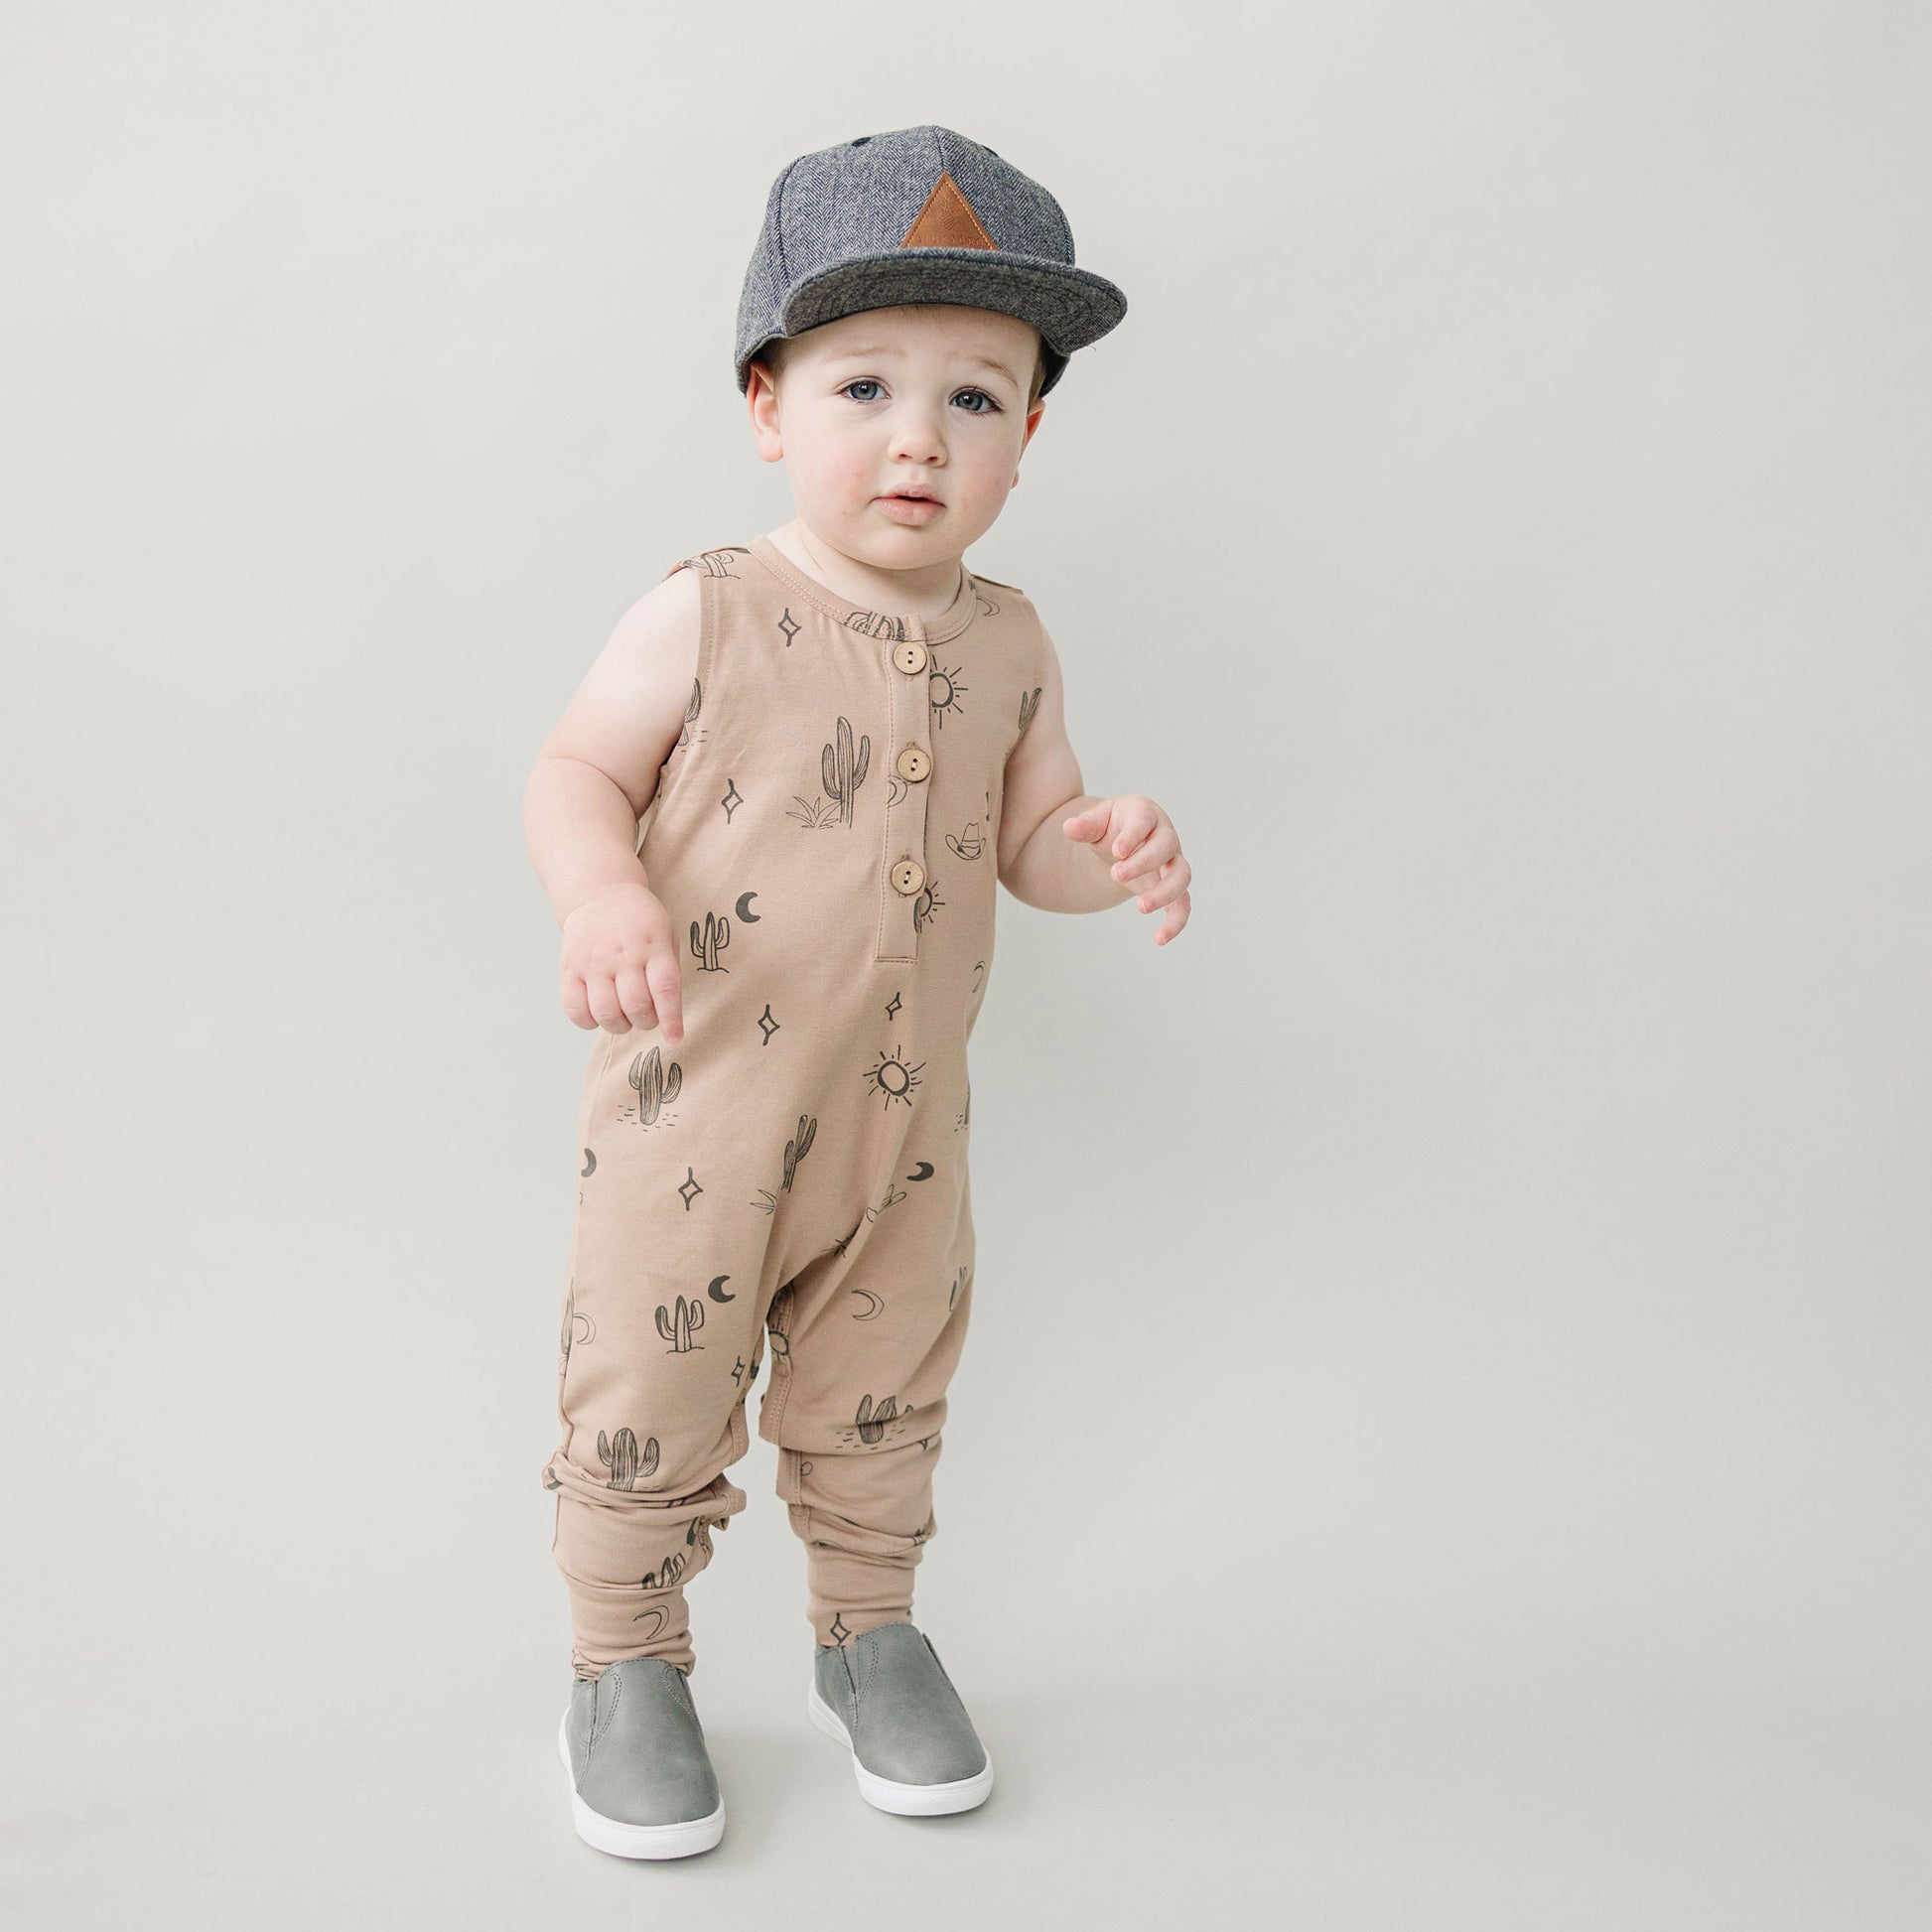 Toddler wearing Mebie Baby Tank Romper - Western